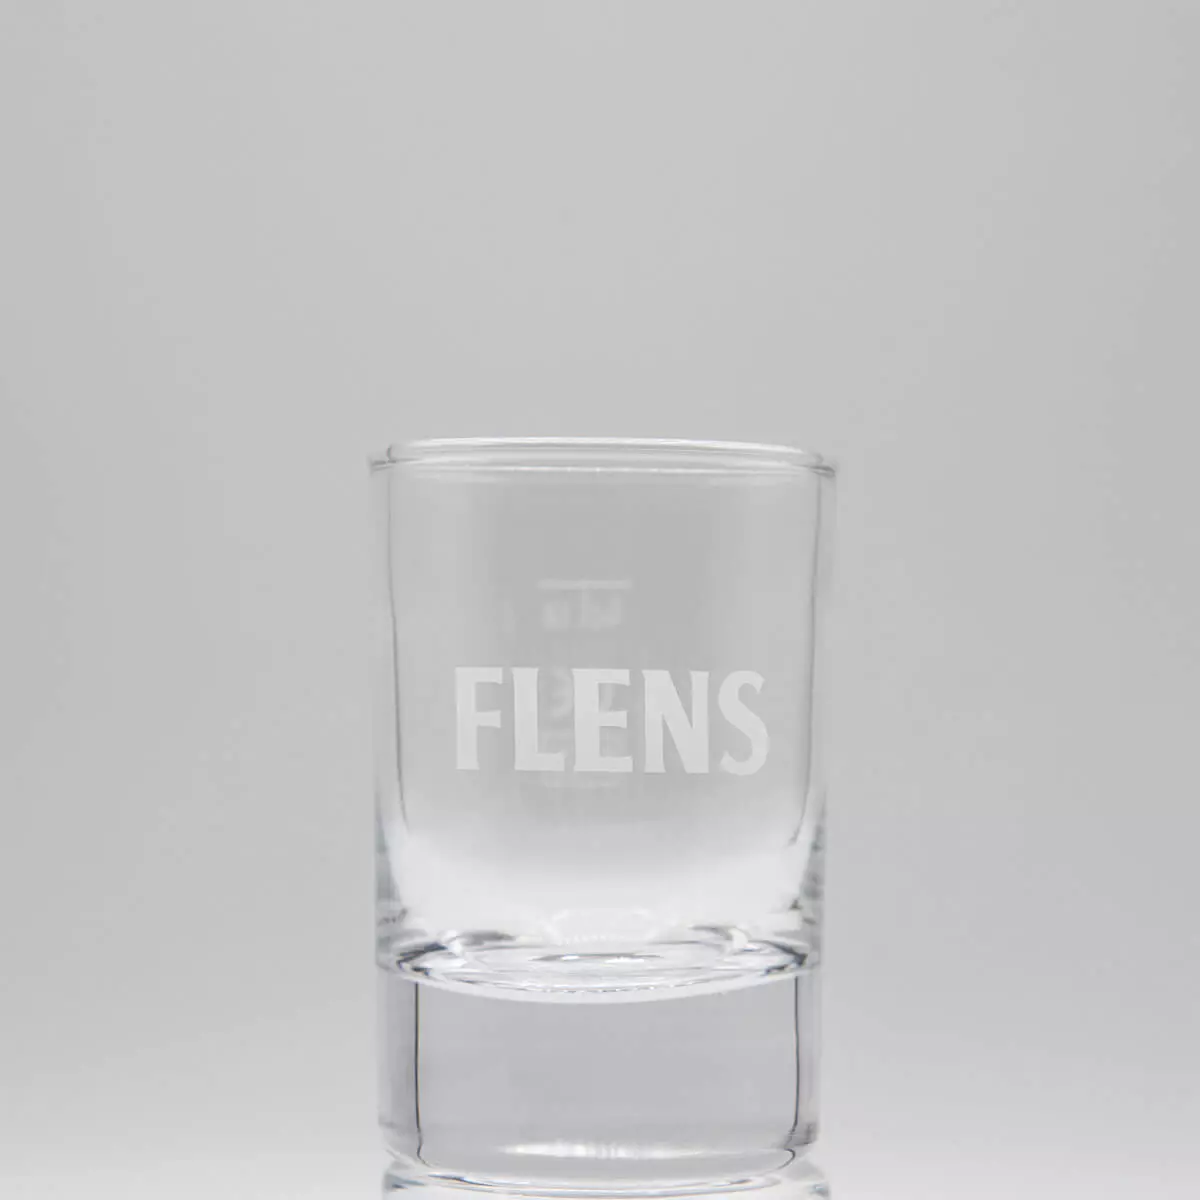 Stamper Shotglas mit FLENS eingraviert.